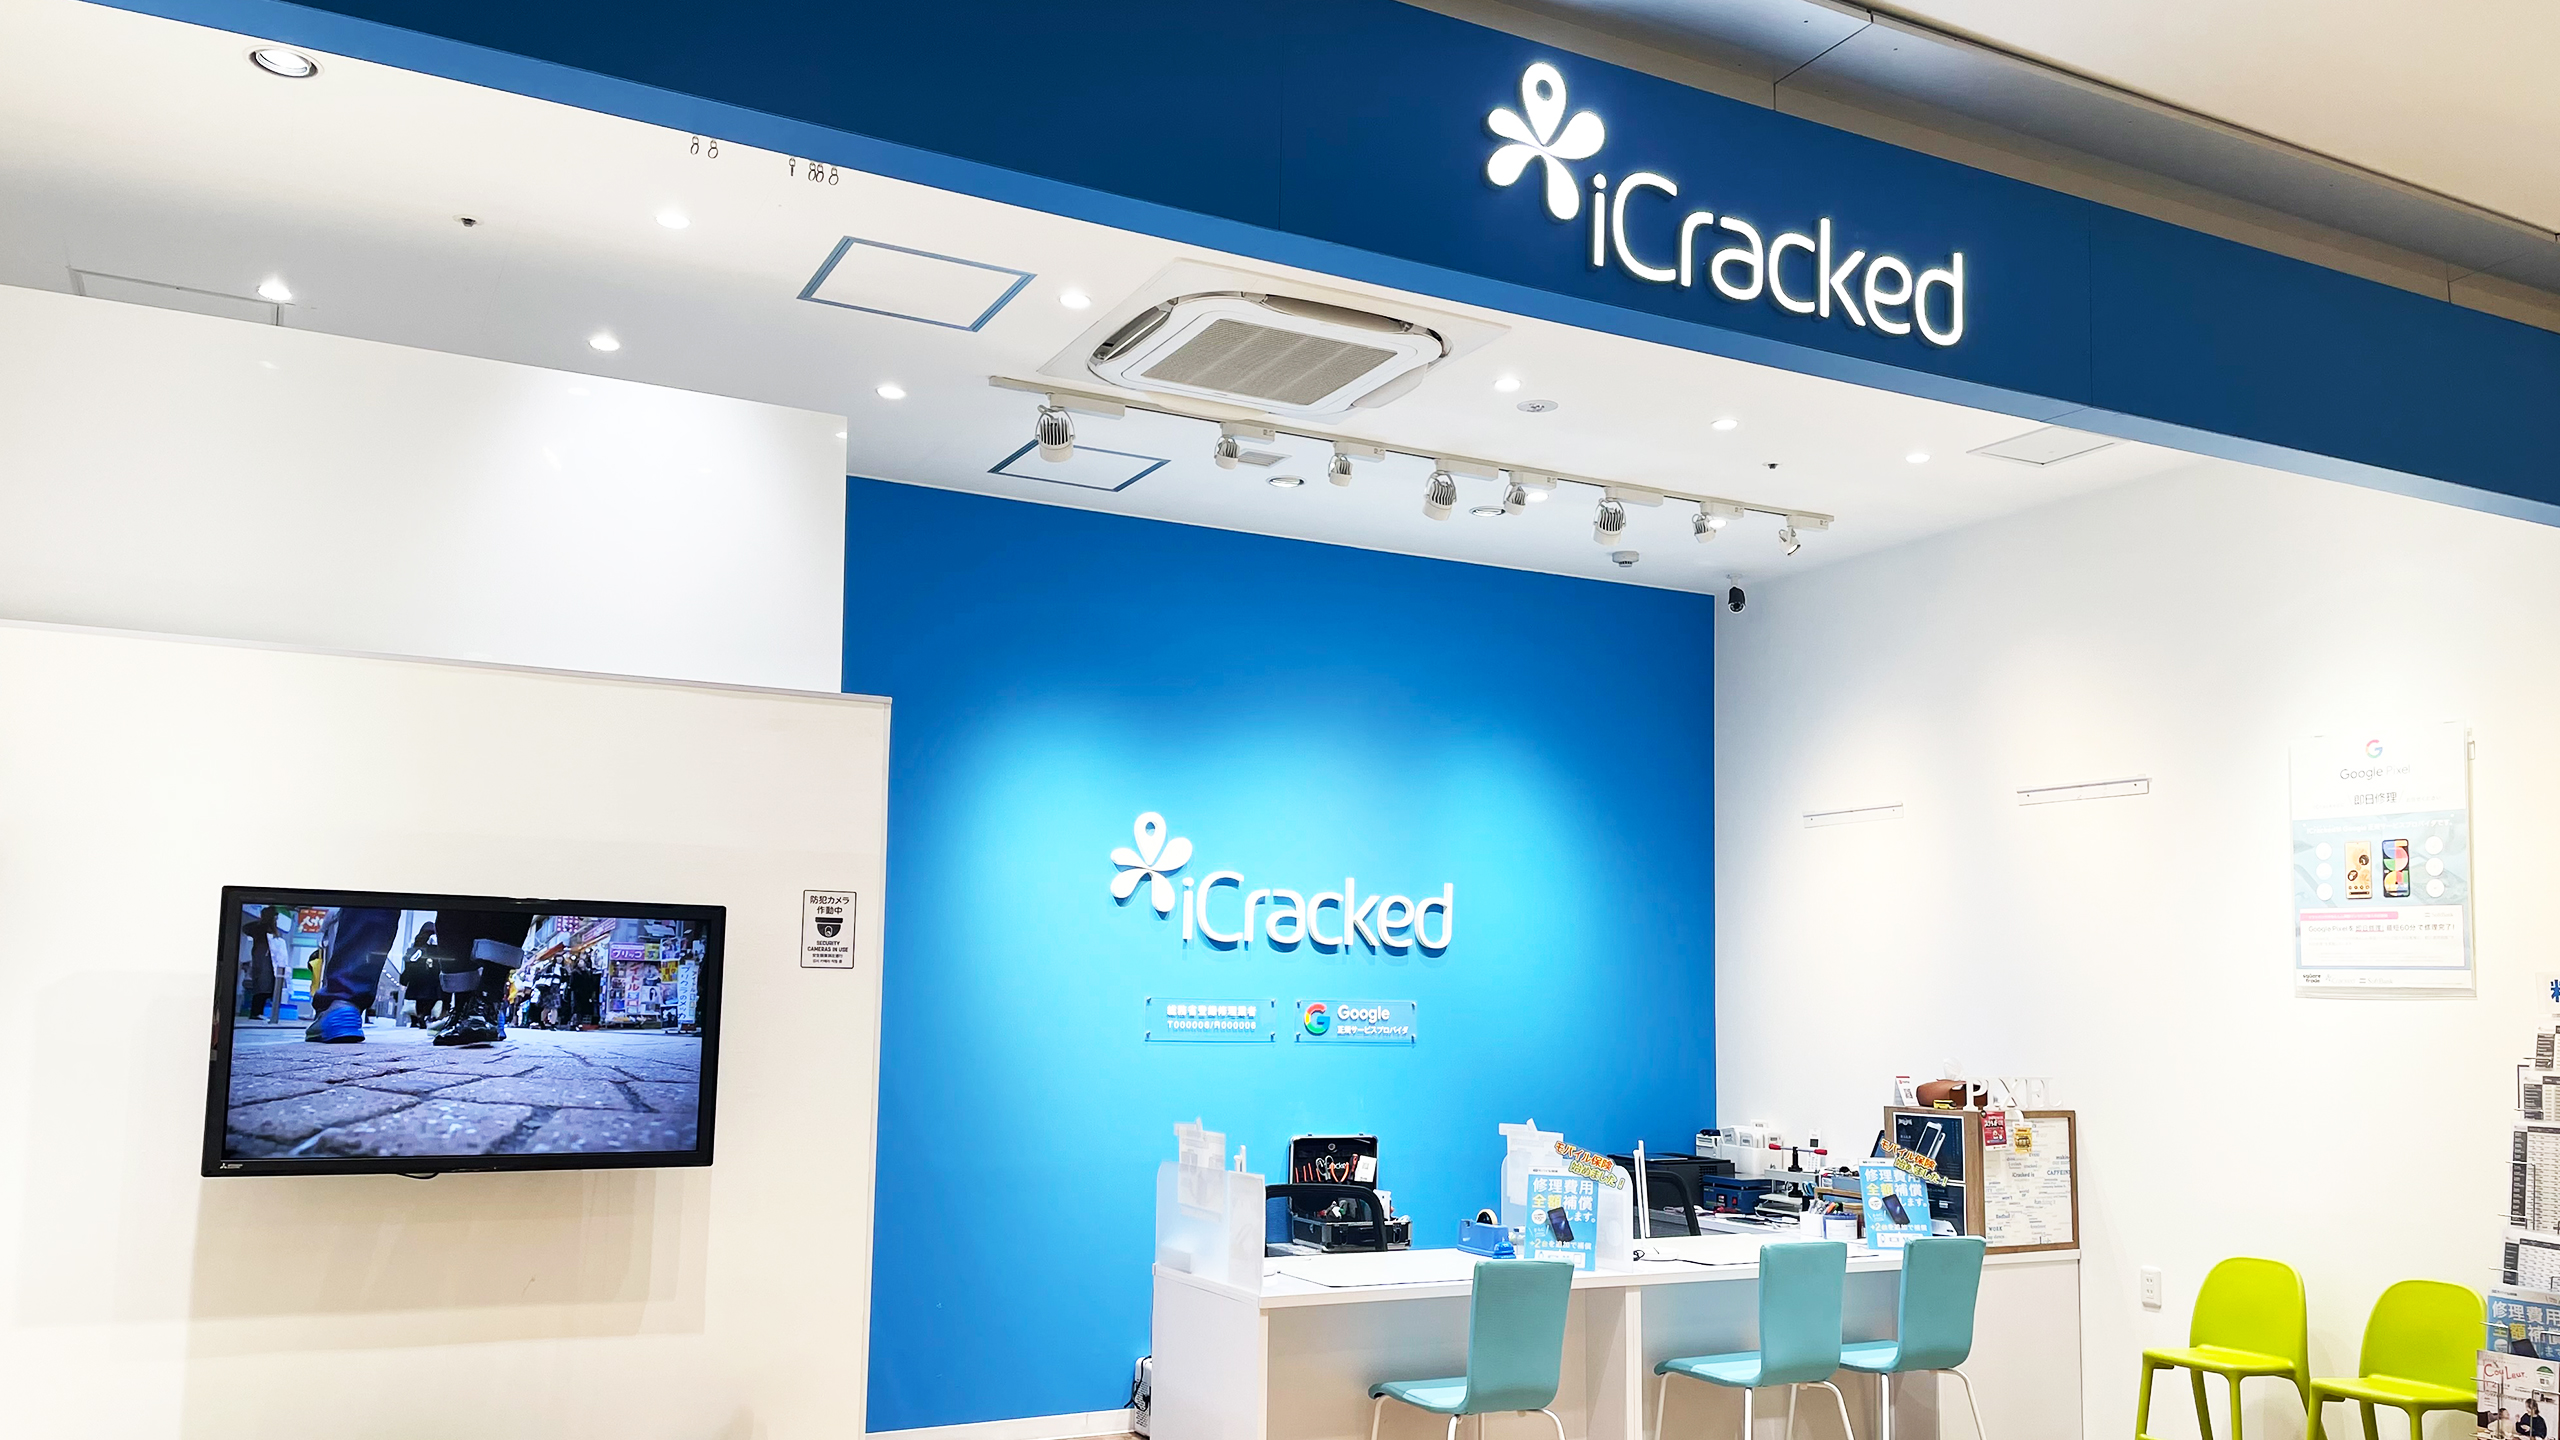 iCracked Store 加古川ニッケパークタウンの店舗画像